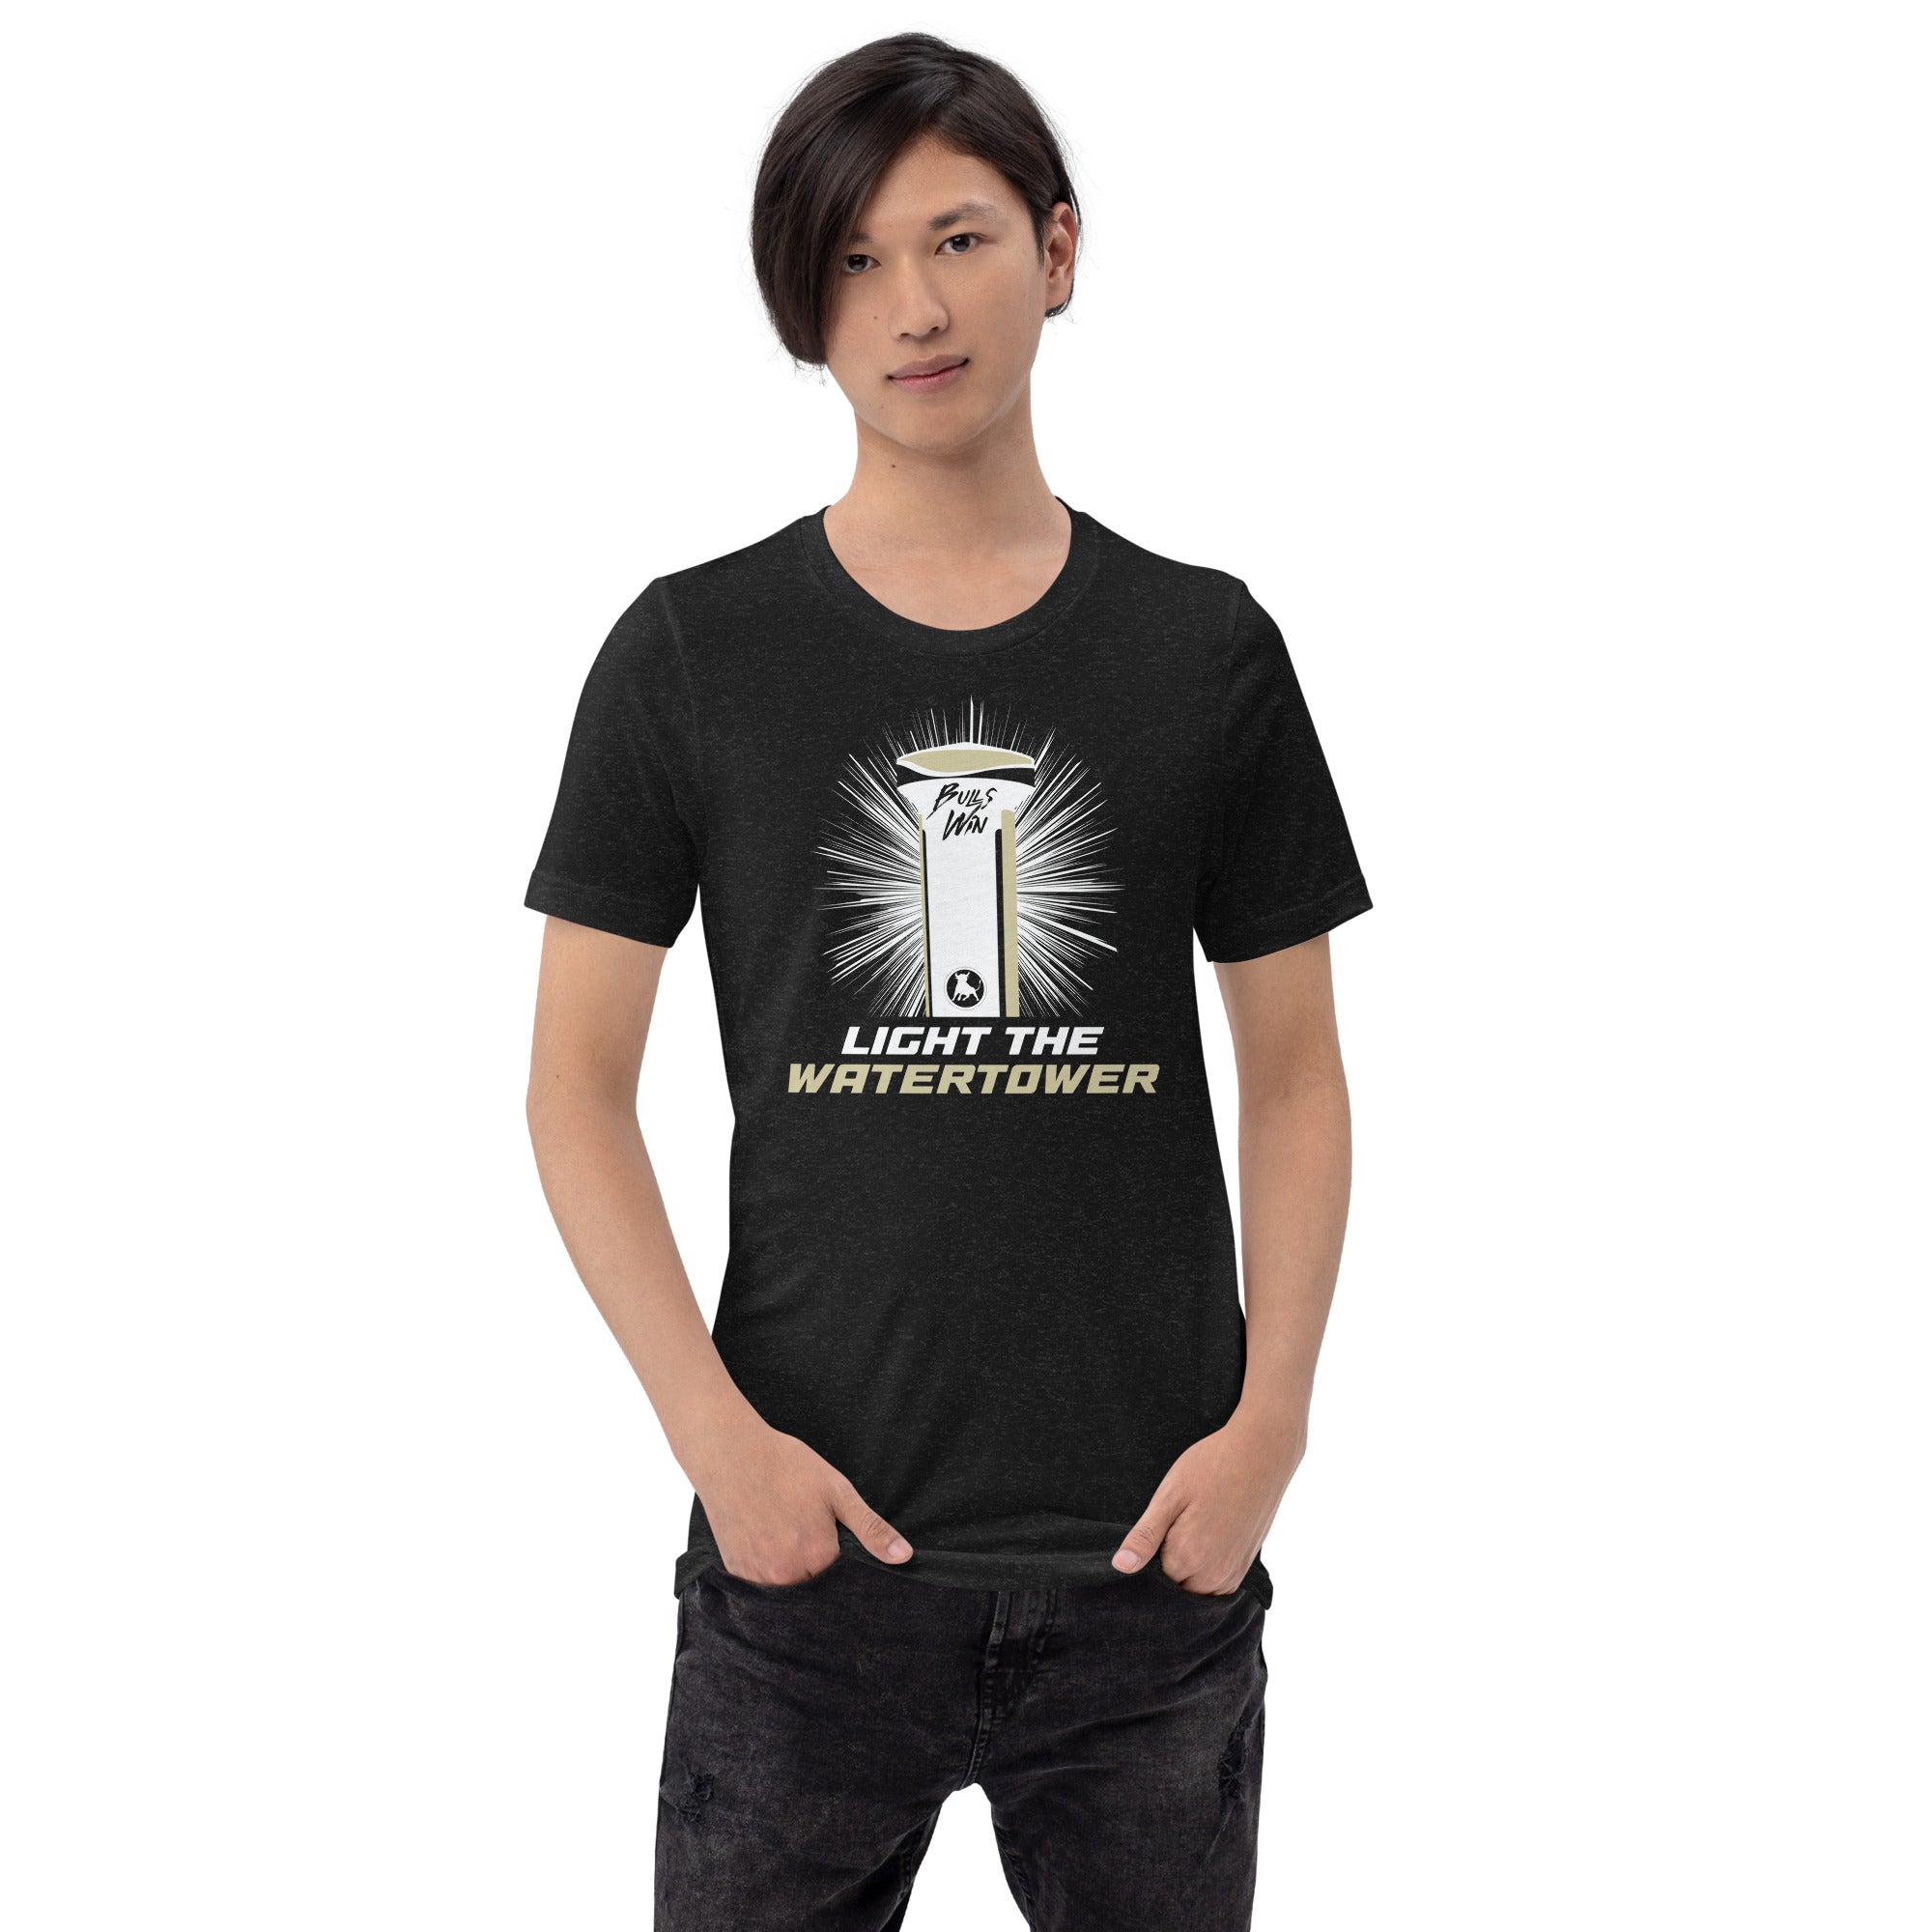 Light the Watertower - Unisex t-shirt